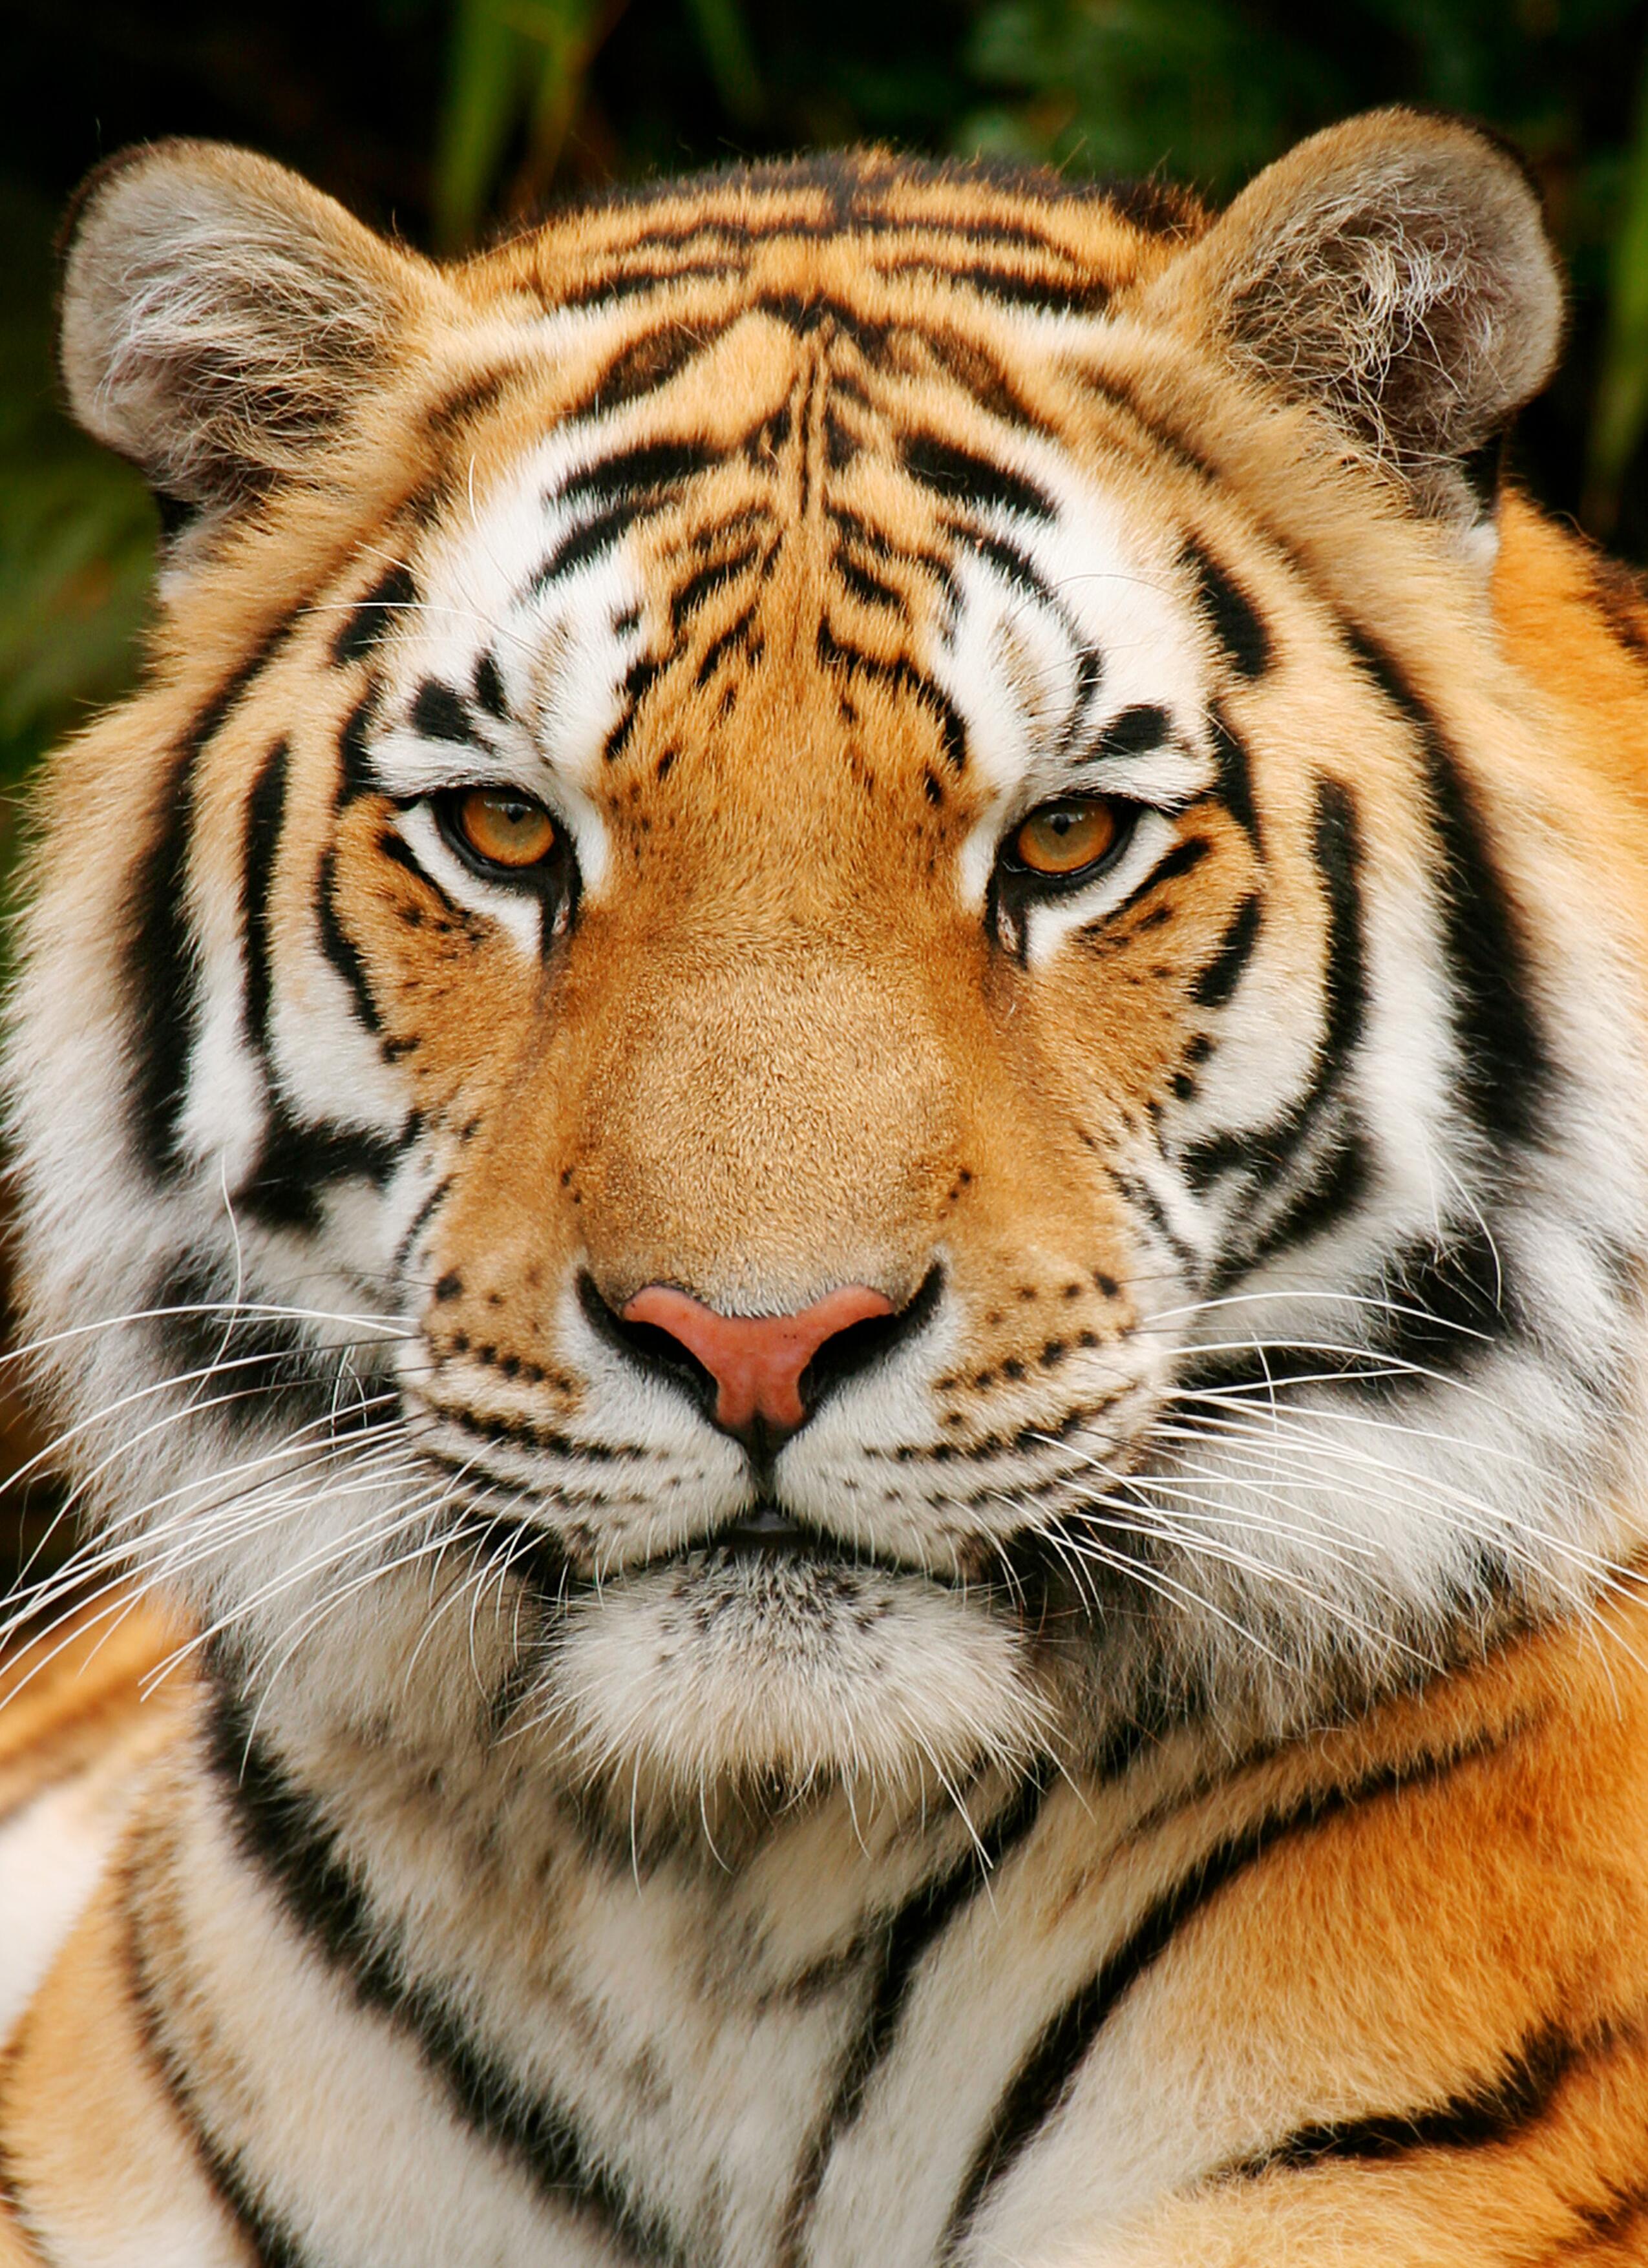 tigers, portraits - desktop wallpaper